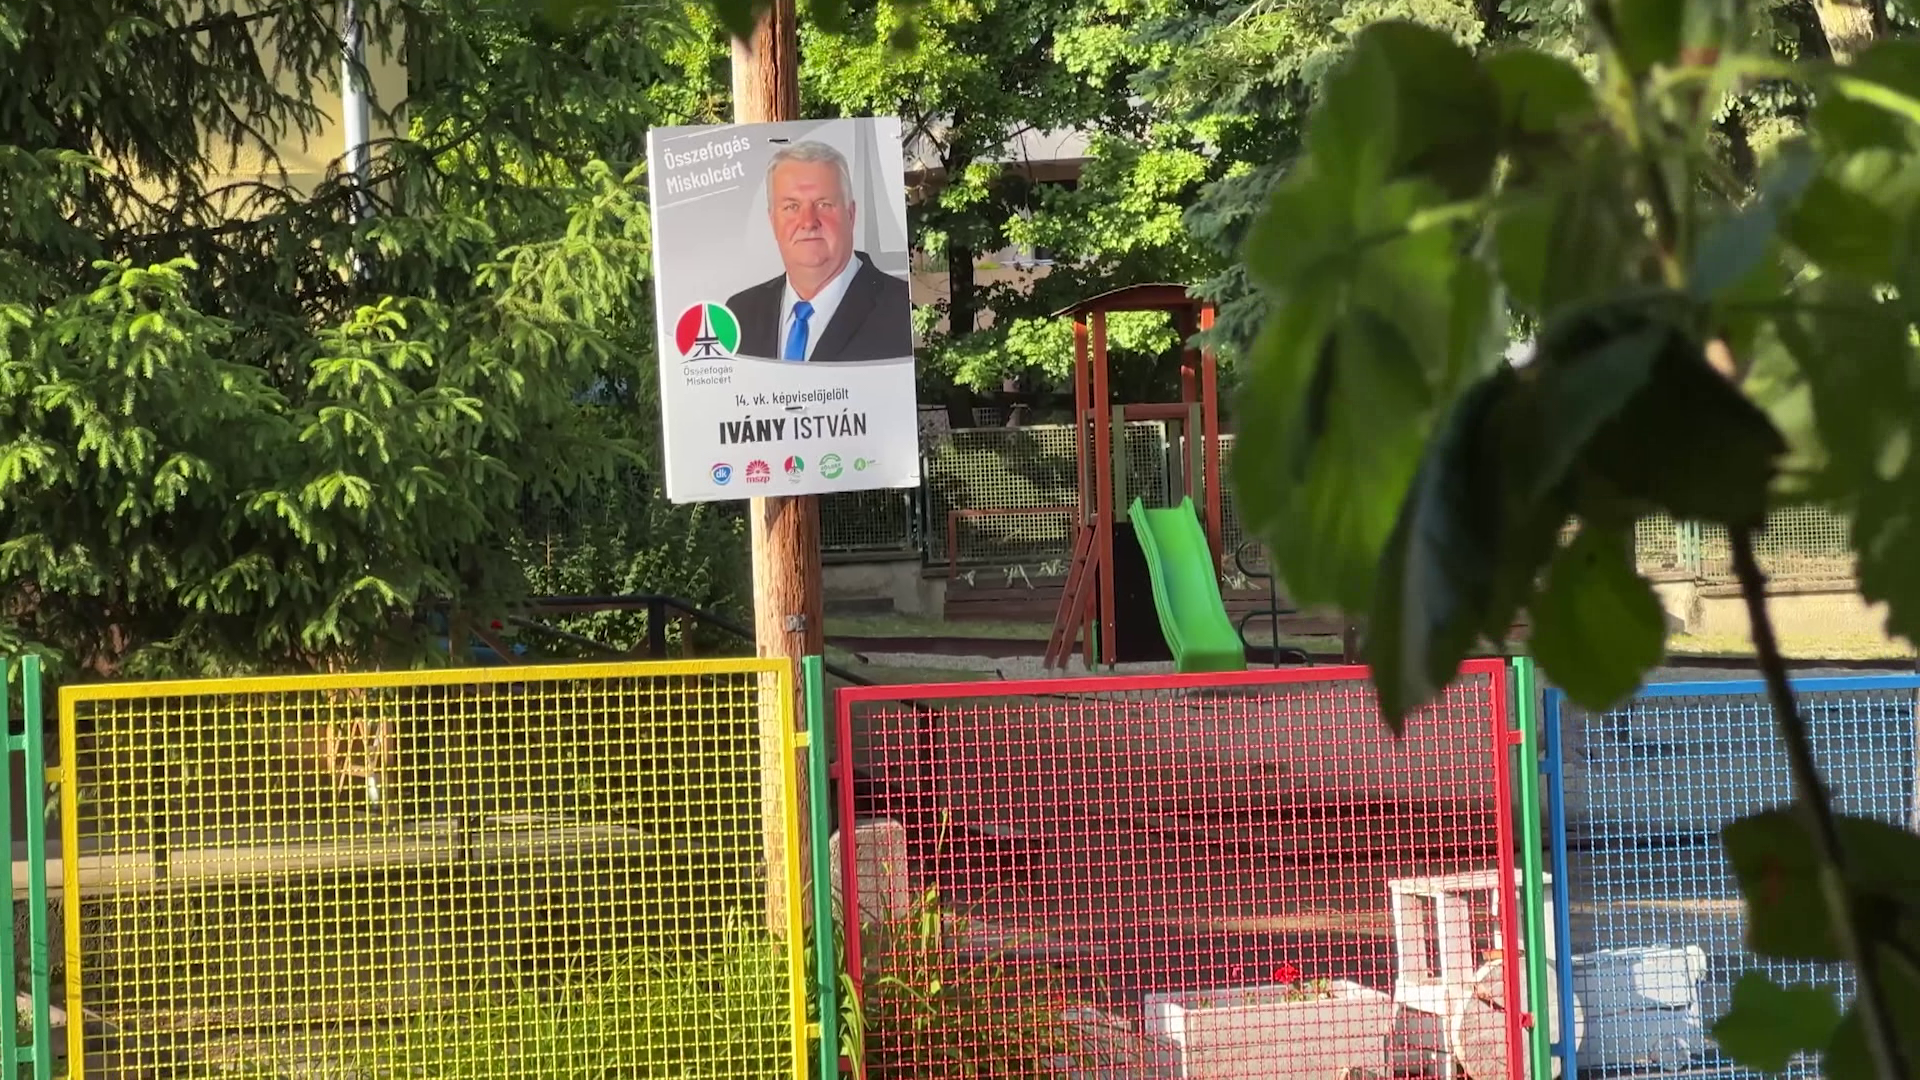 Egy óvoda udvarán helyezett el plakátot az ellenzék  Miskolctapolcán + videó